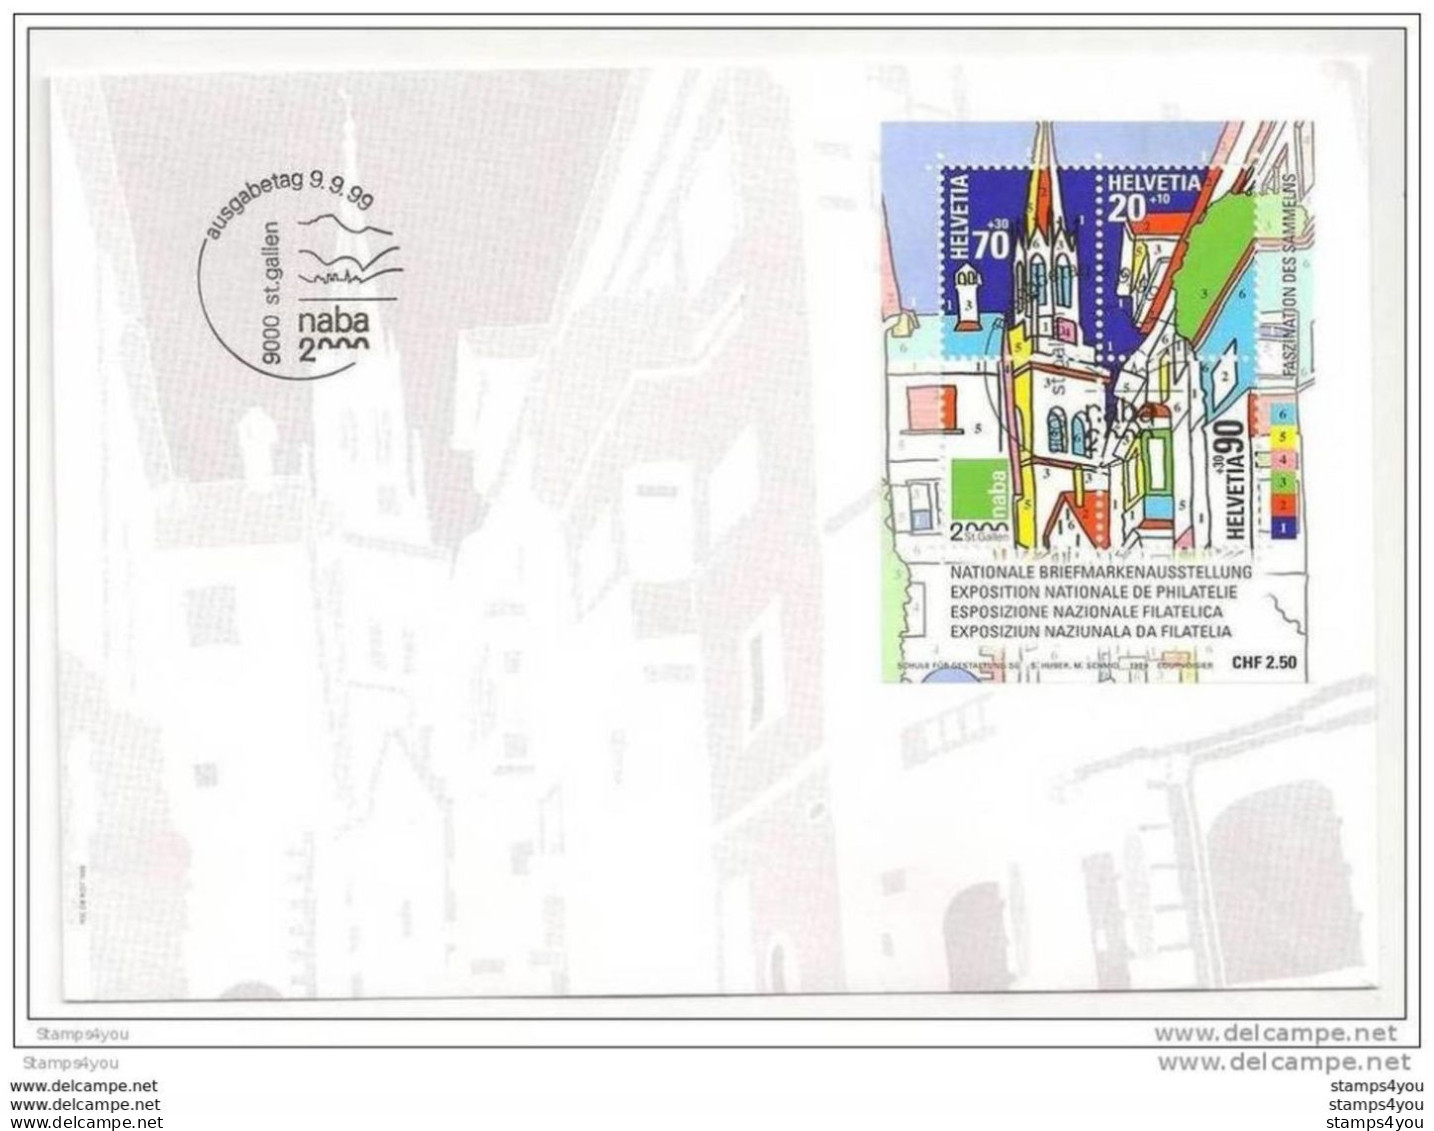 GG - 0211 - Enveloppe Suisse Avec Bloc Expor NABA 2000 St Gallen  9.9.99. - Filatelistische Tentoonstellingen